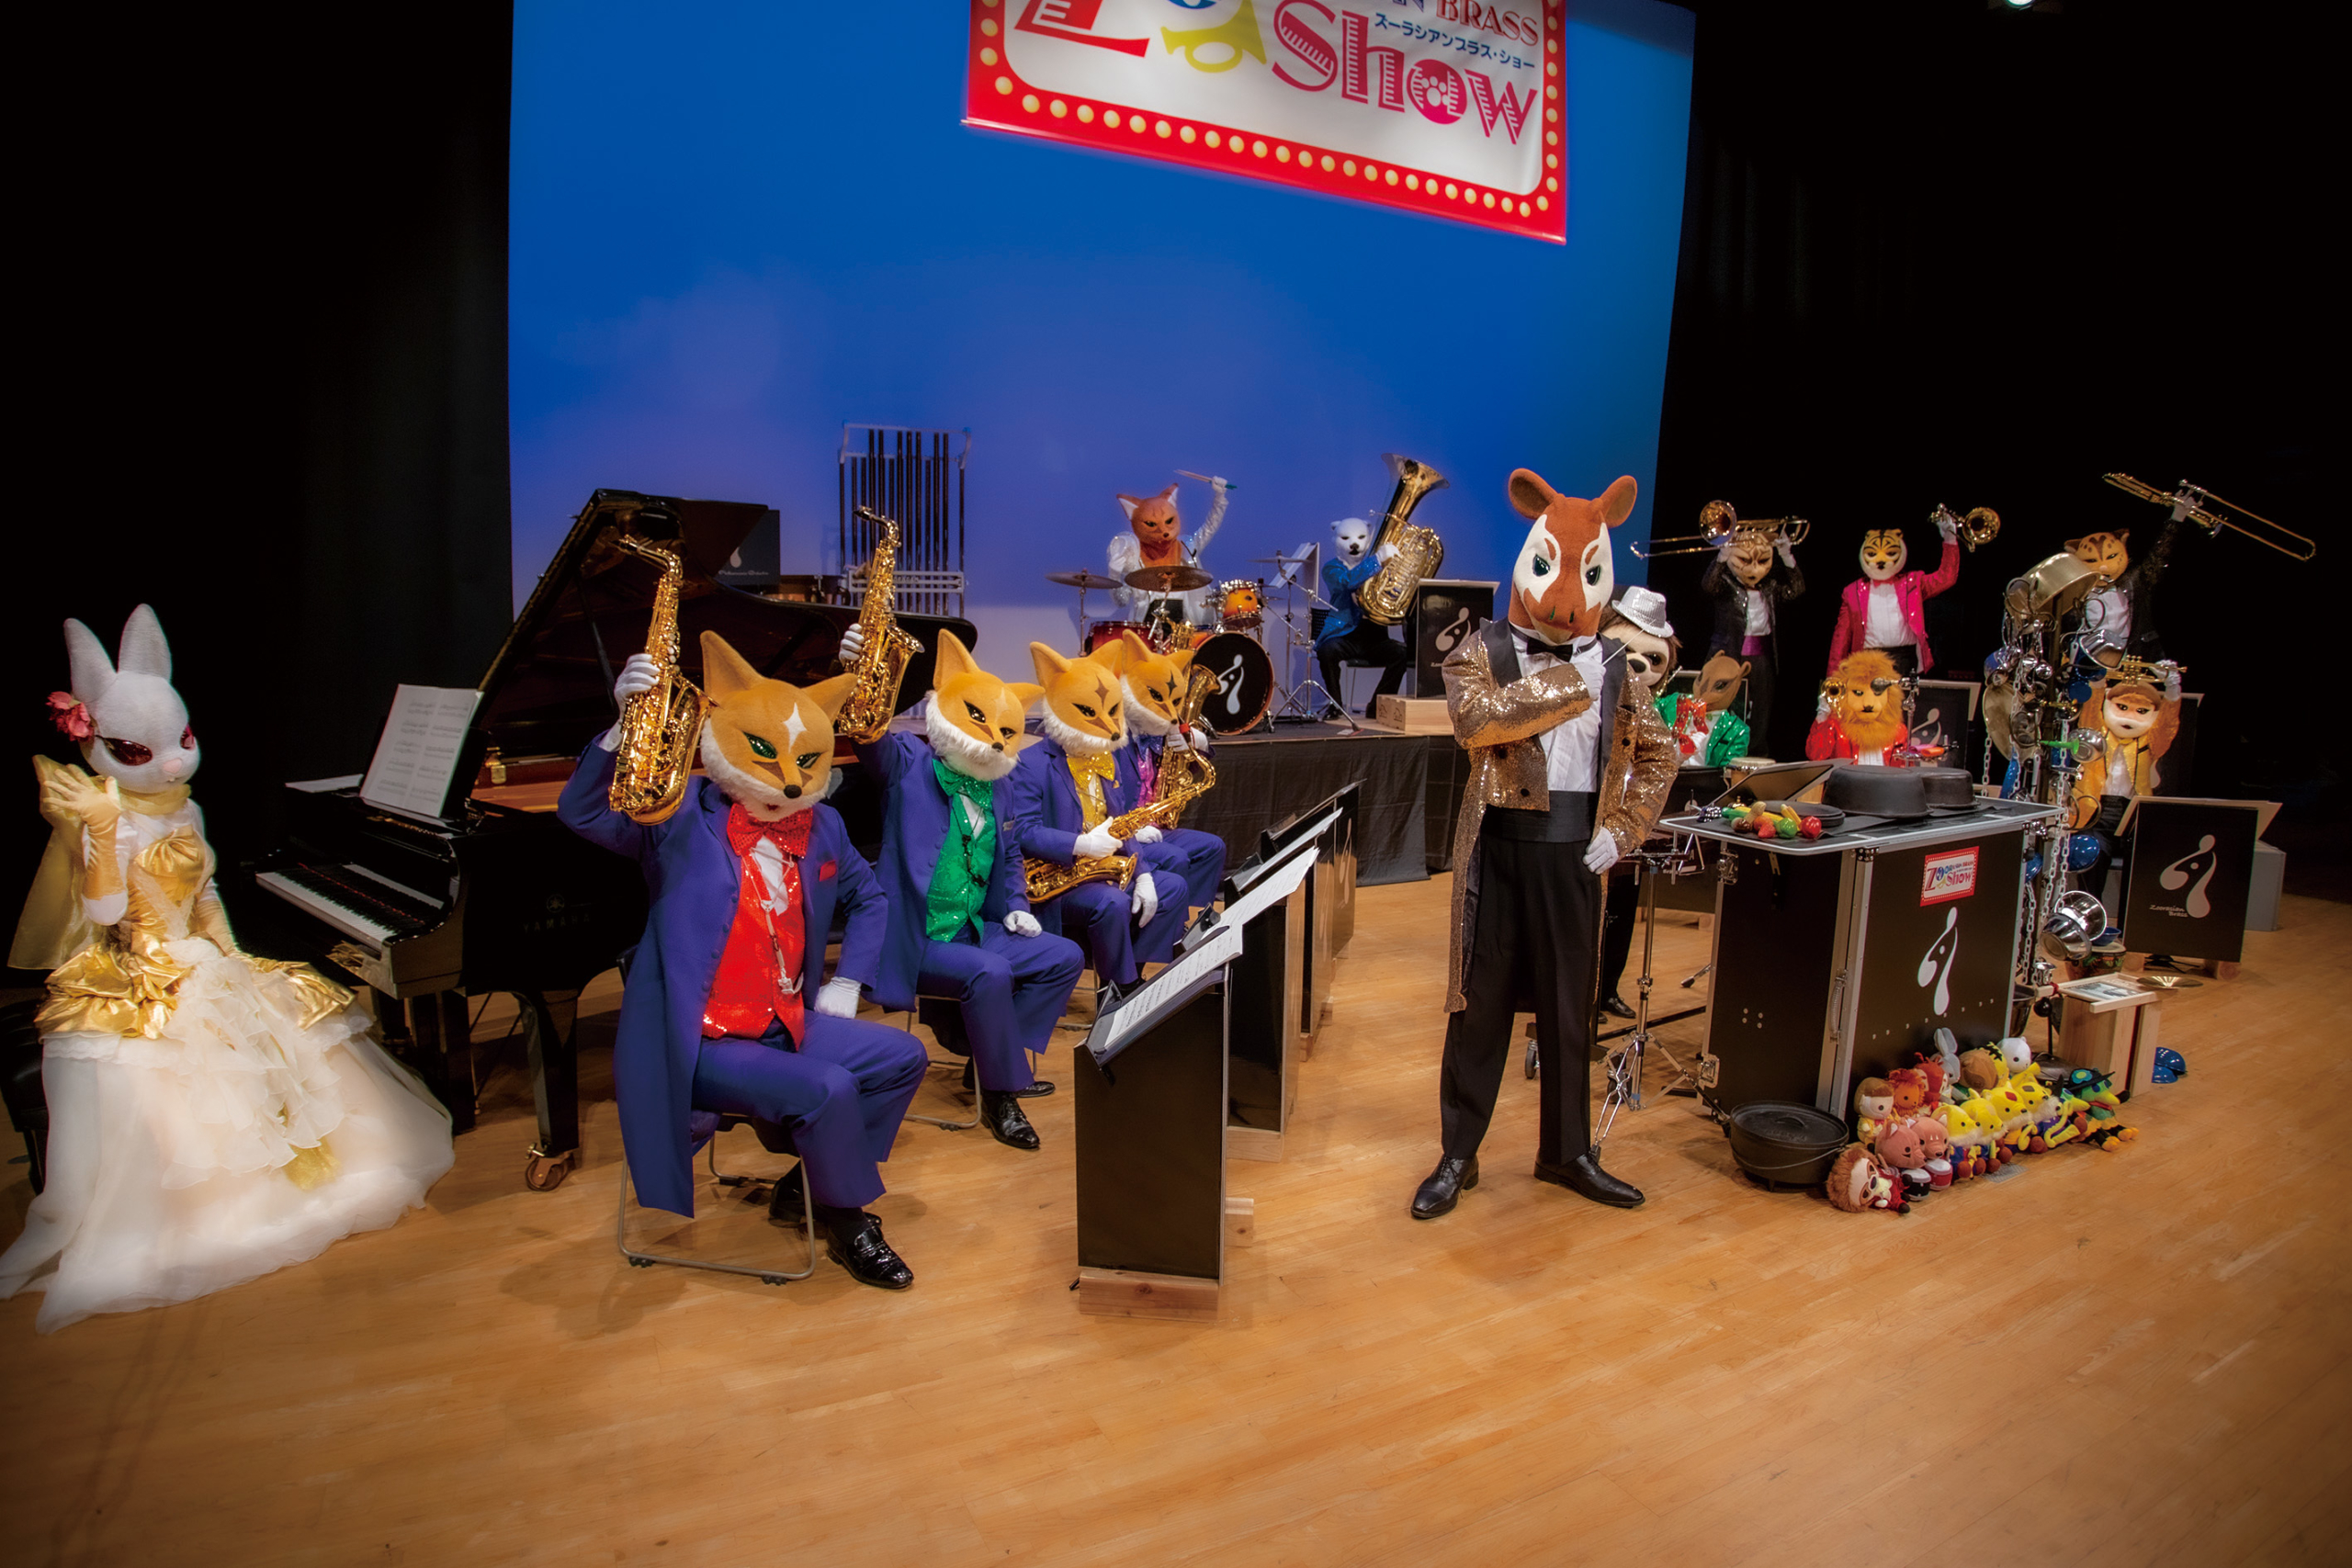 抱腹絶倒！動物たちが奏でる冗談音楽の祭典
『ズーラシアンブラス・ショー』
2022年6月24日(金)、25日(土)開催